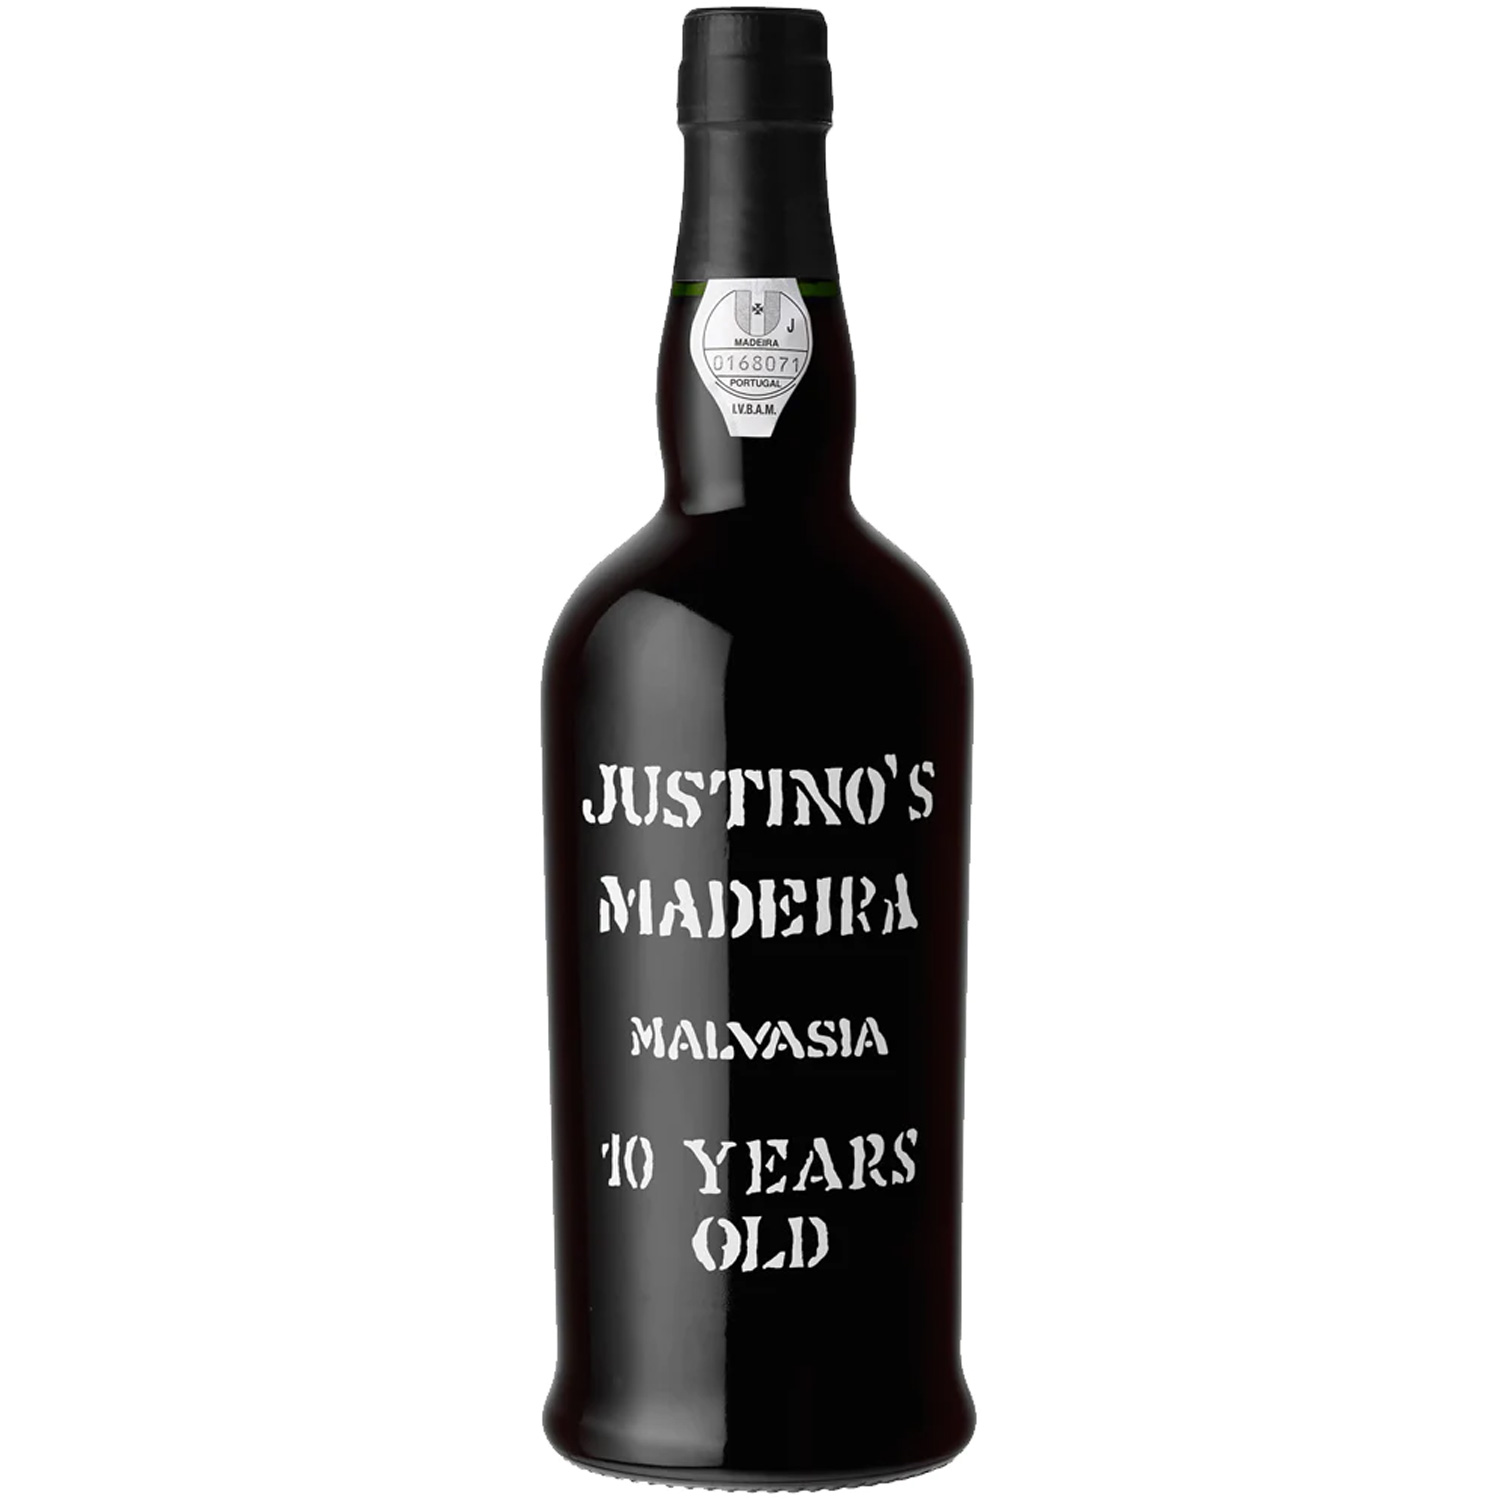 Justino's Malvasia Madeira 10 Years Old